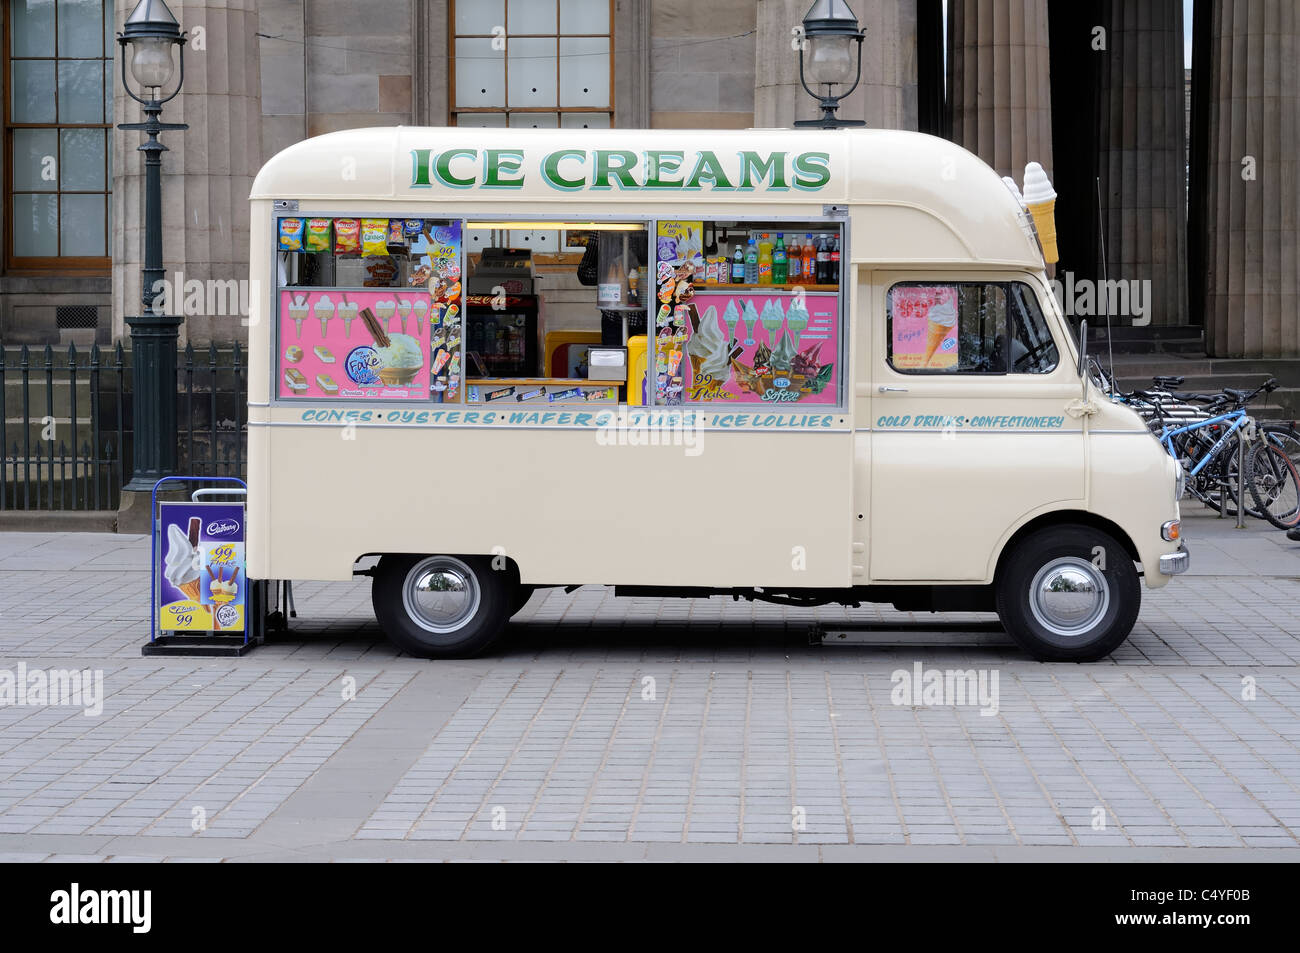 Traditioneller Alter Britischer Eiswagen Vor Der Scottish National Gallery In Princes Gardens Edinburgh Schottland Stockfoto